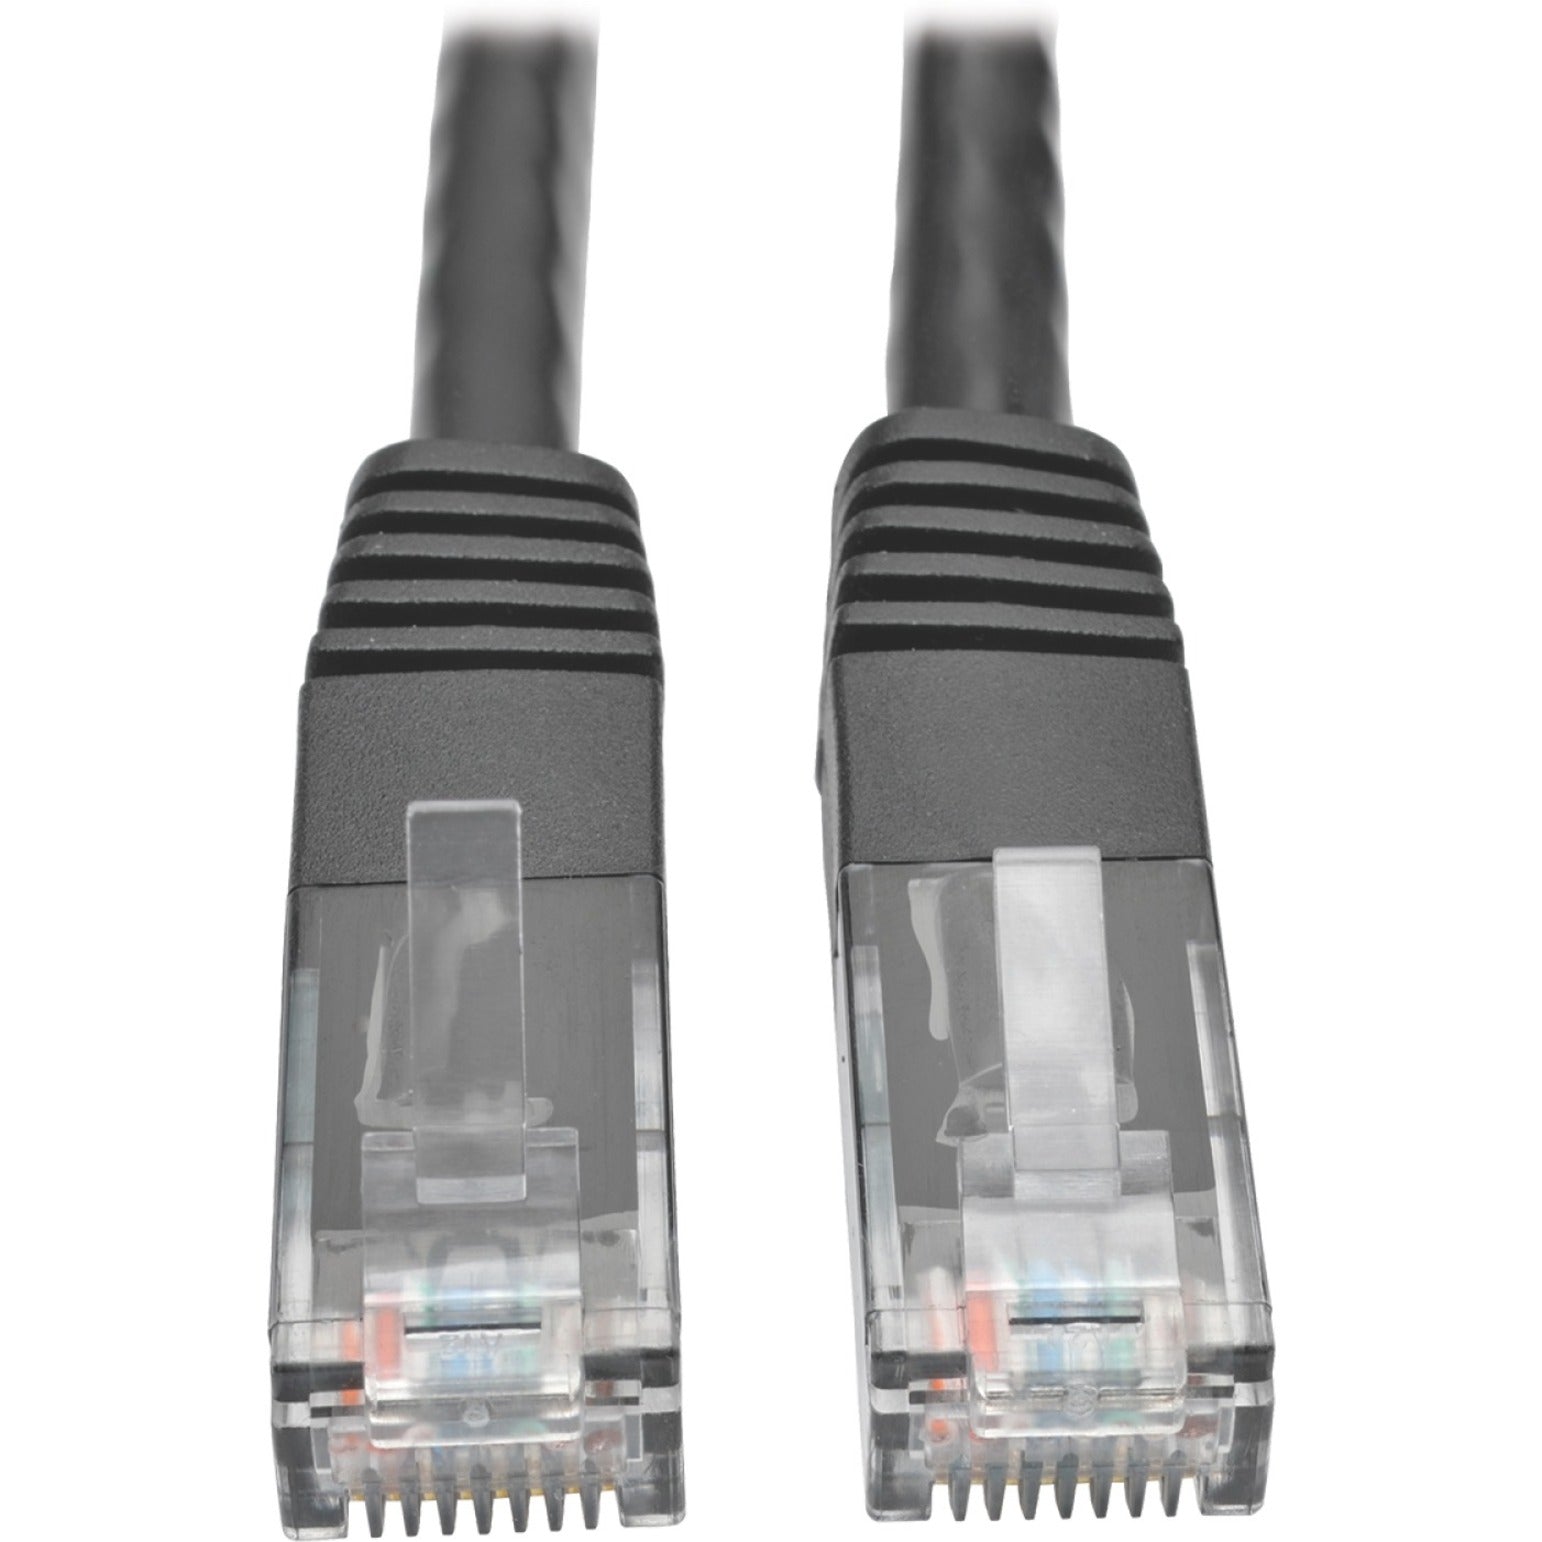 Cable de Parche Moldeado Gigabit Cat6 Tripp Lite N200-002-BK (RJ45 M/M) Negro 0.61 m